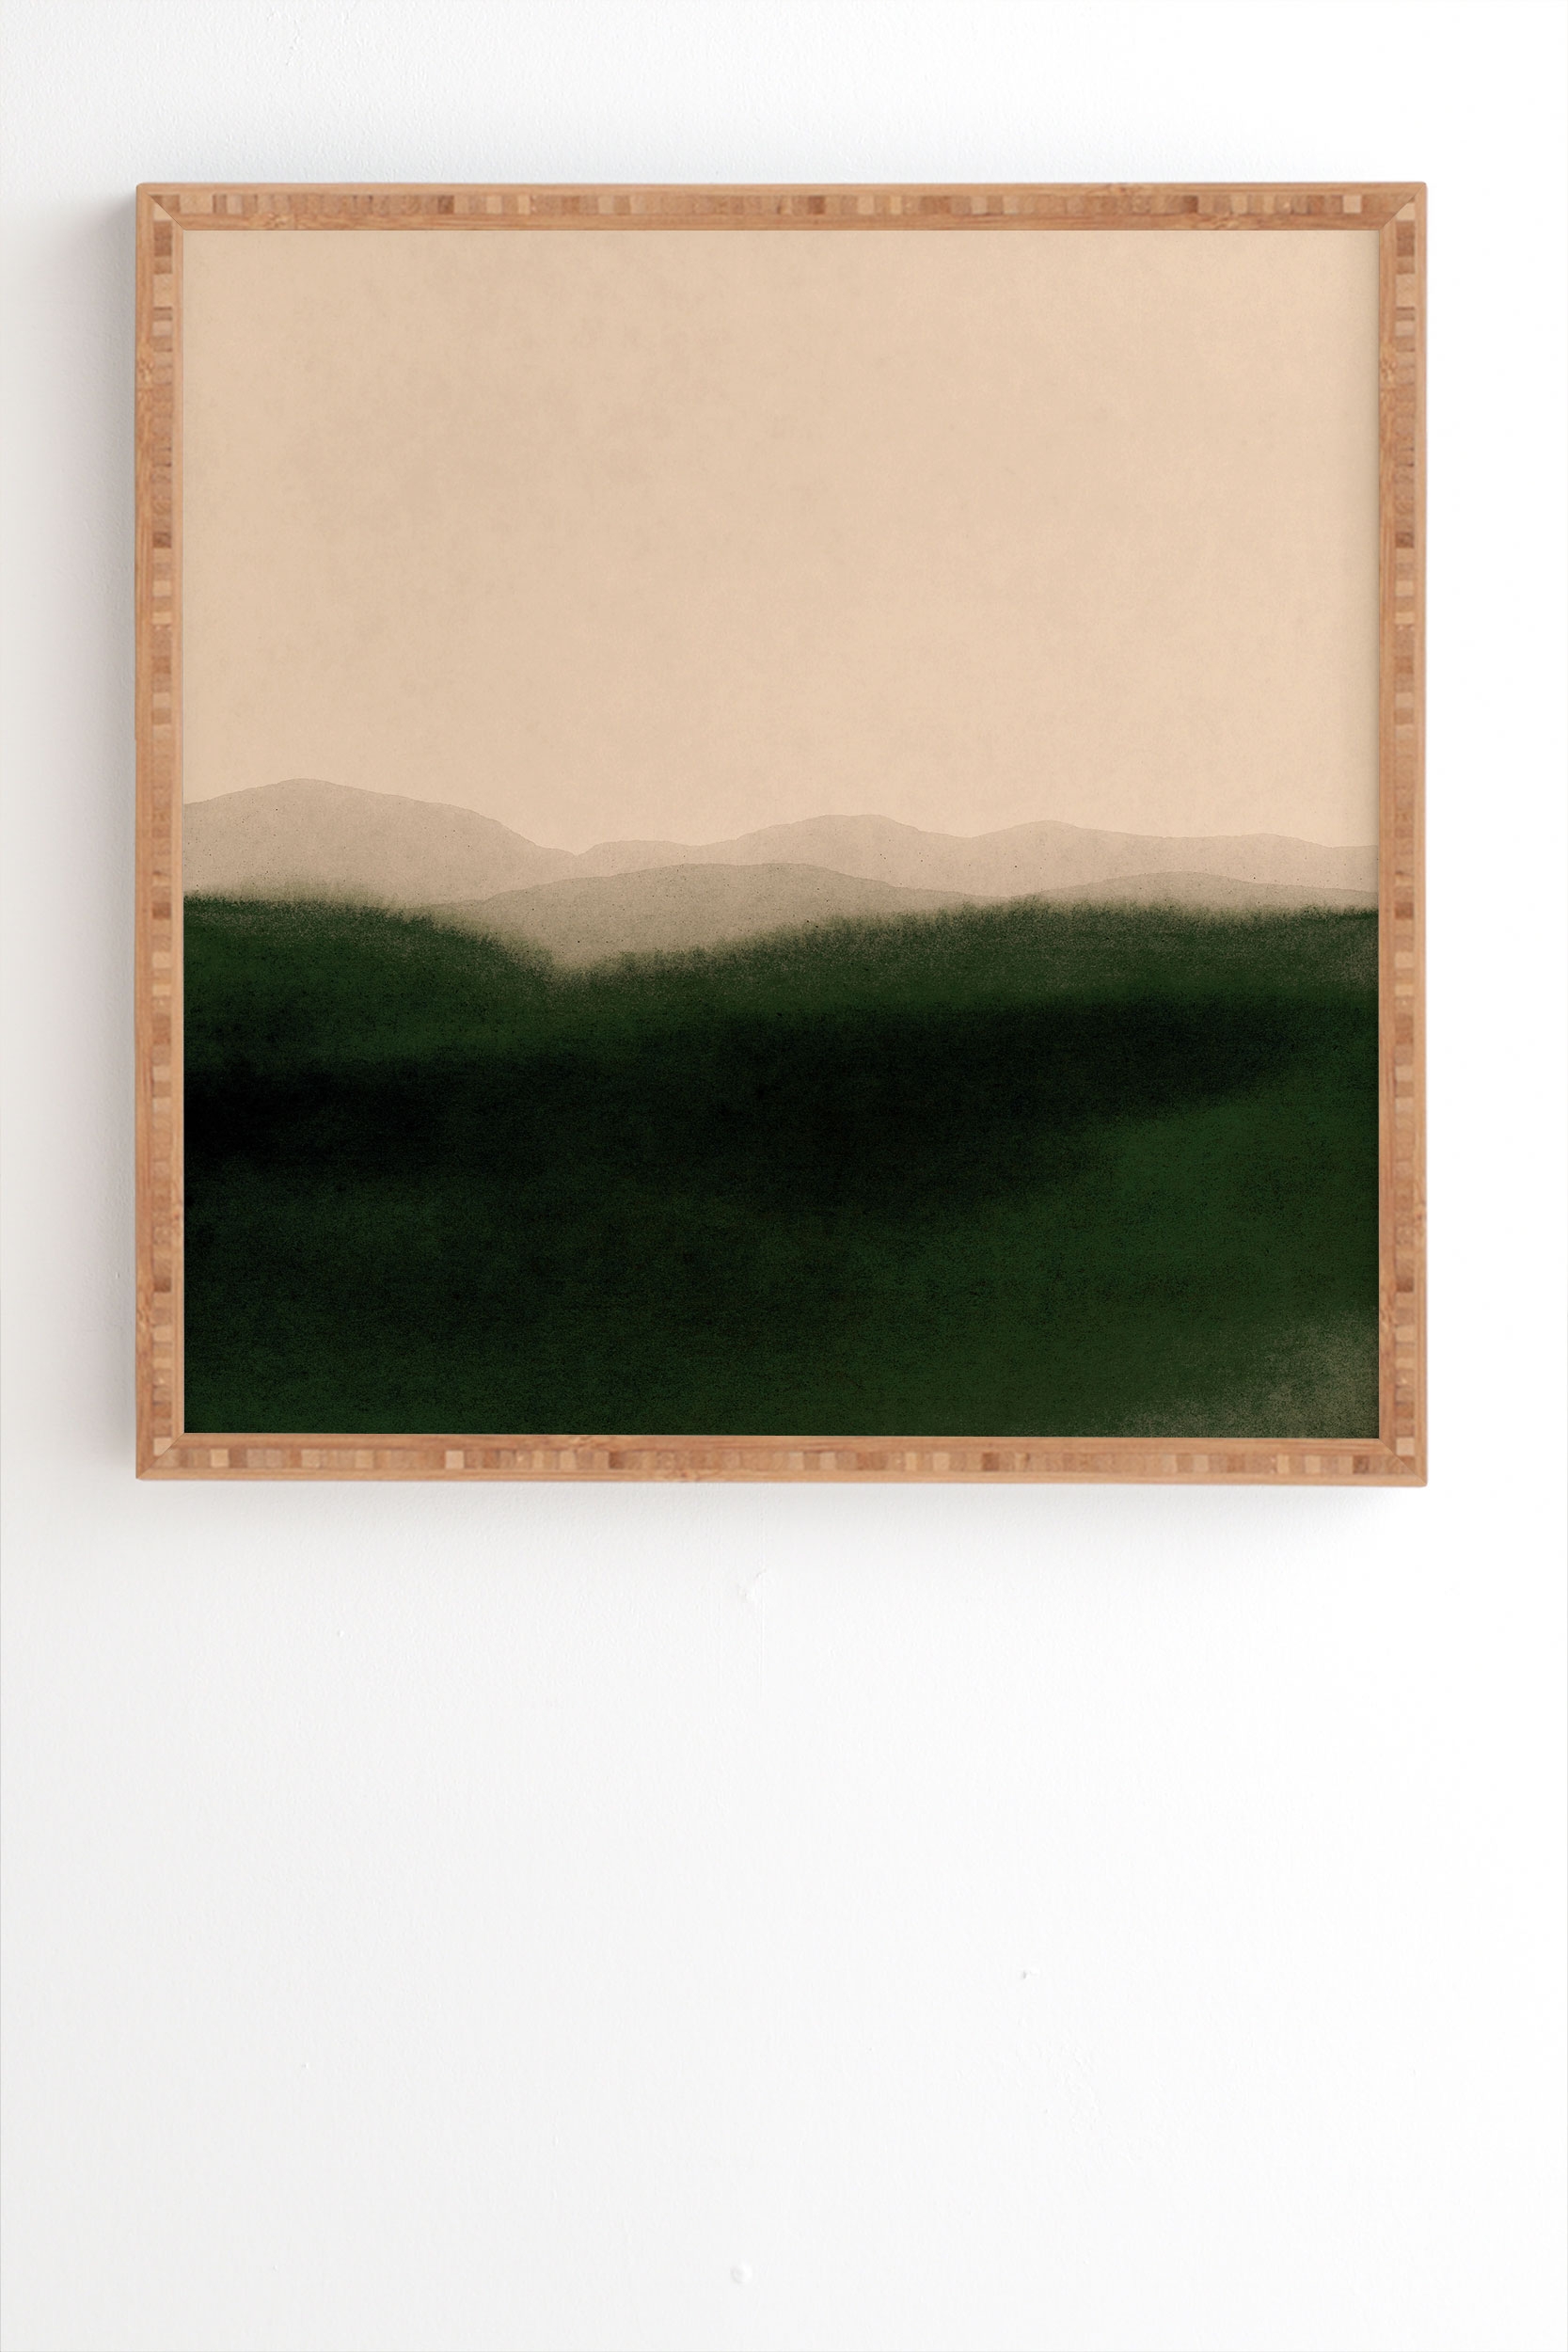 Green Hills by Iris Lehnhardt - Framed Wall Art Bamboo 19" x 22.4" - Image 1